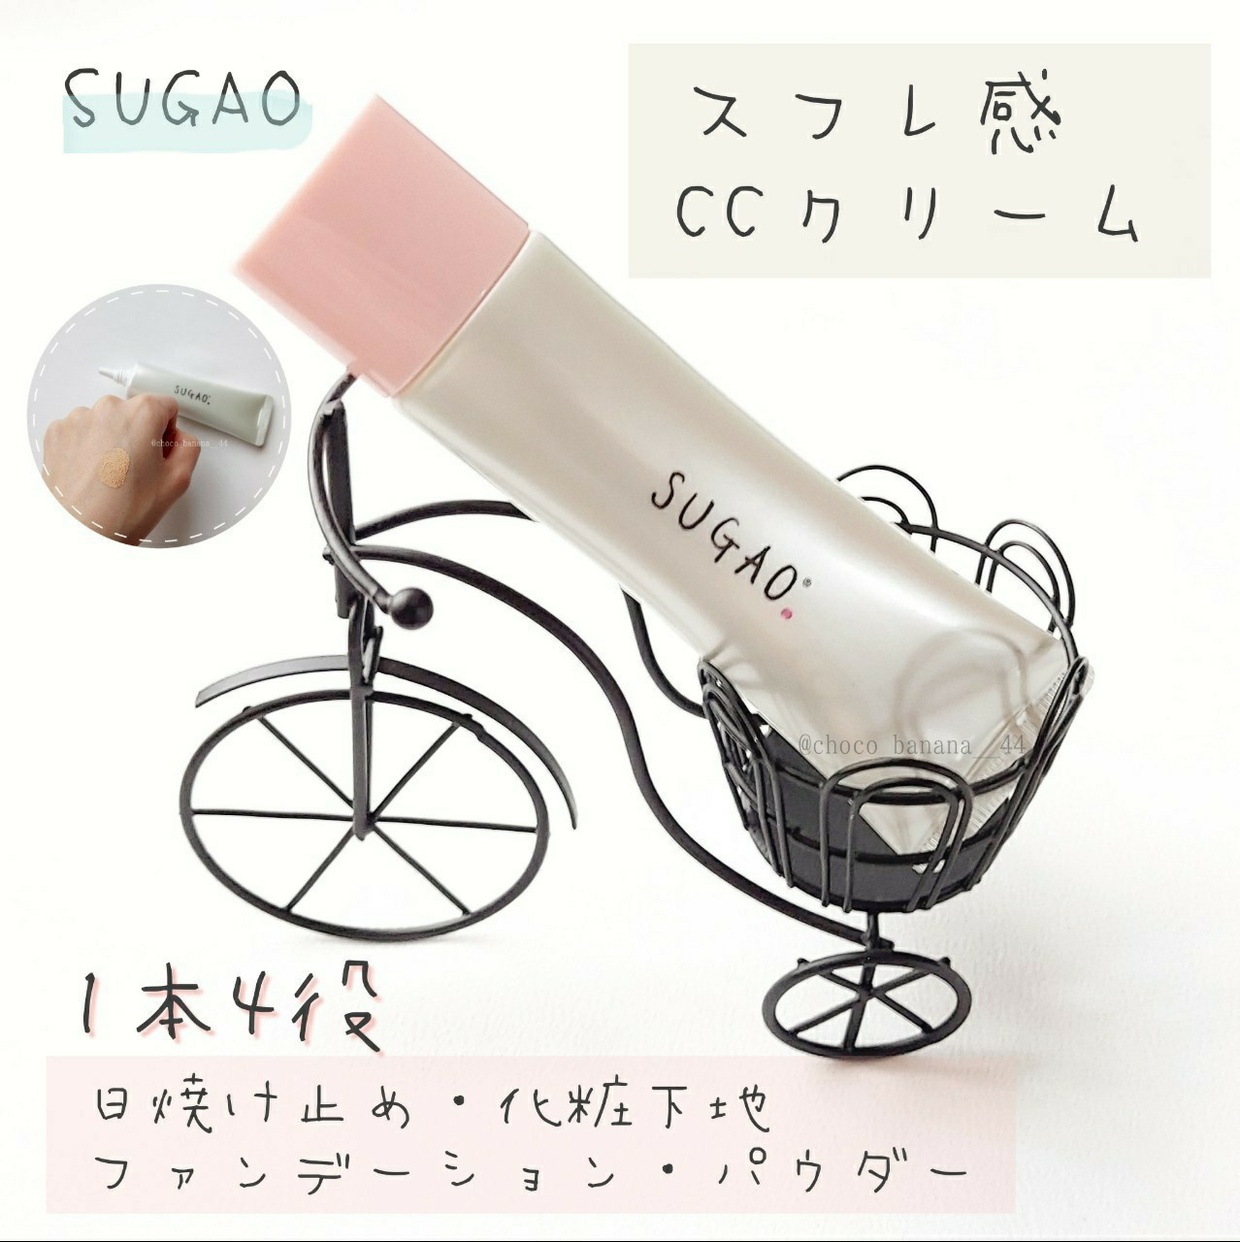 SUGAO(スガオ) スフレ感CCクリームの気になる点・悪い点・デメリットに関するししさんの口コミ画像1